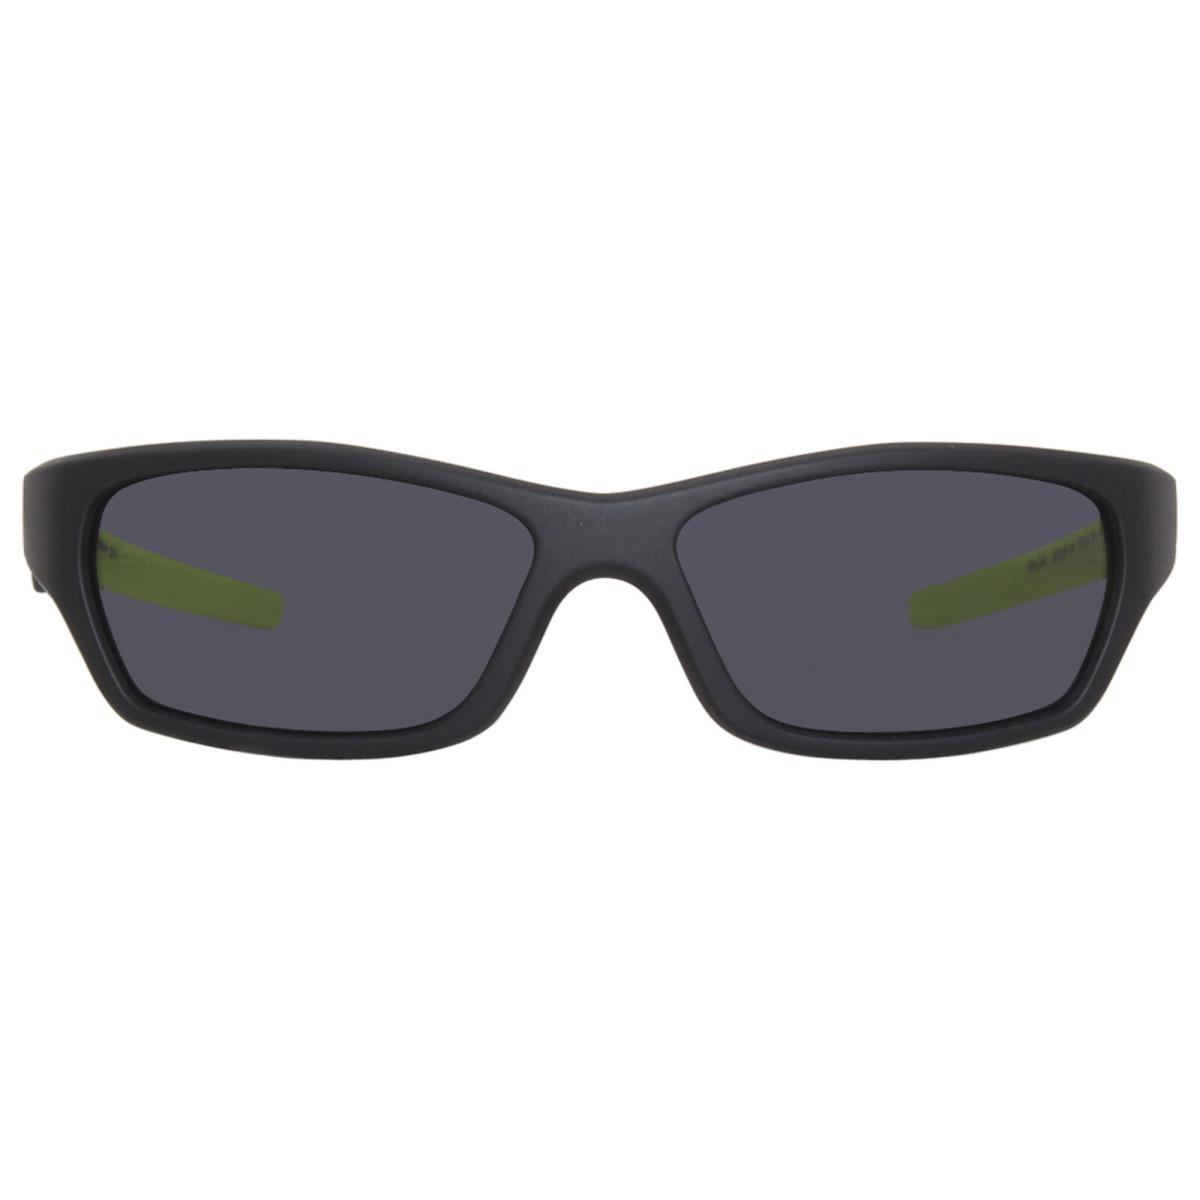 Nike Jolt-m DZ7378 010 Sunglasses Space Matte Black/dark Grey Lenses 57mm - Frame: Black, Lens: Gray